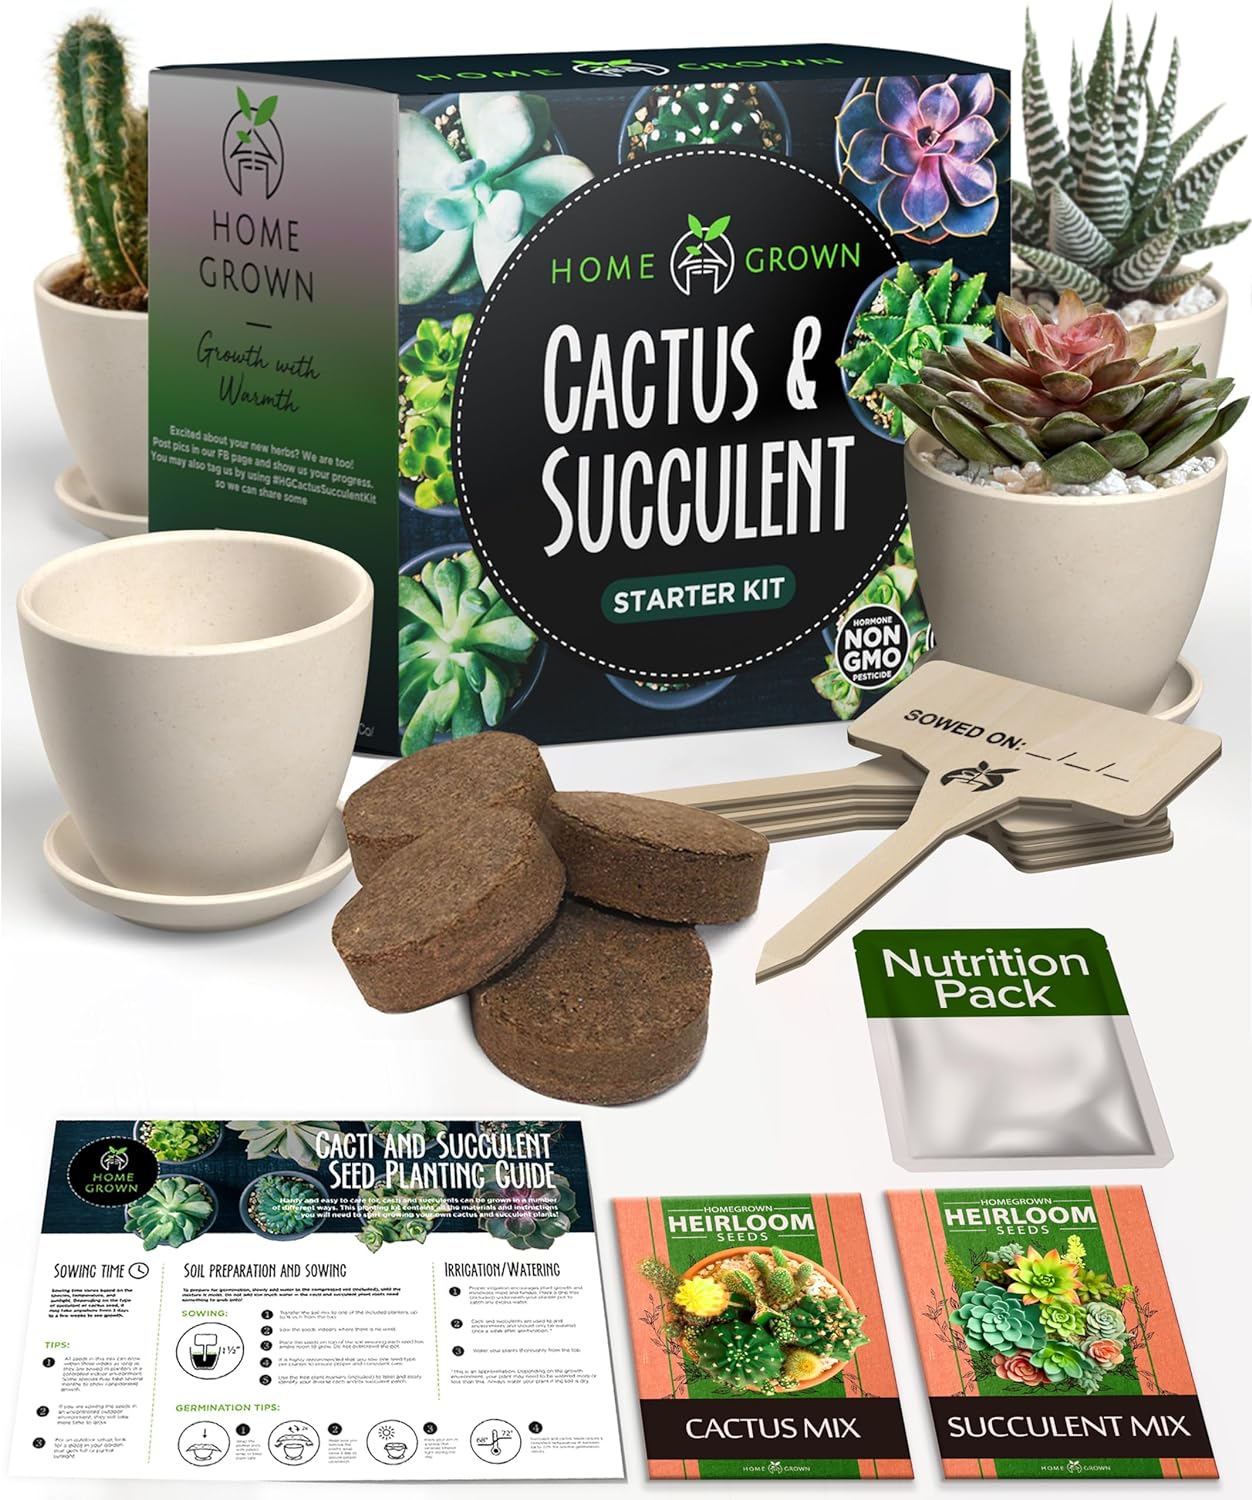 Cactus & Succulent Grow Kit